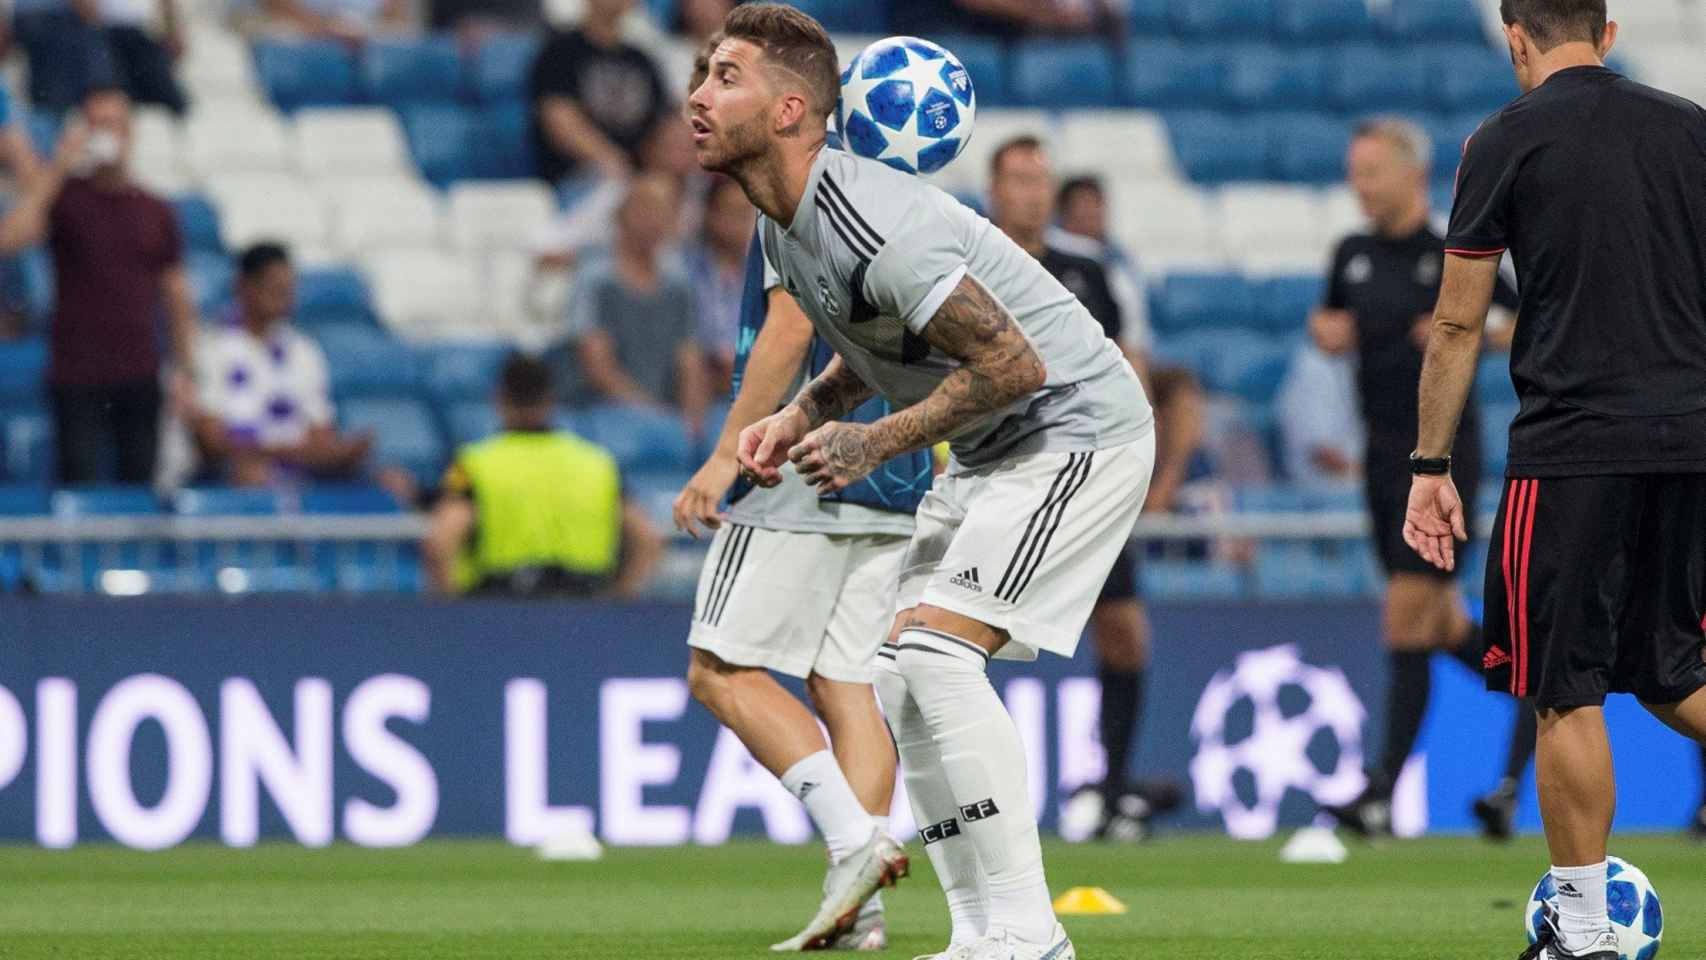 Sergio Ramos calentando en la previa de un partido con el Real Madrid / EFE